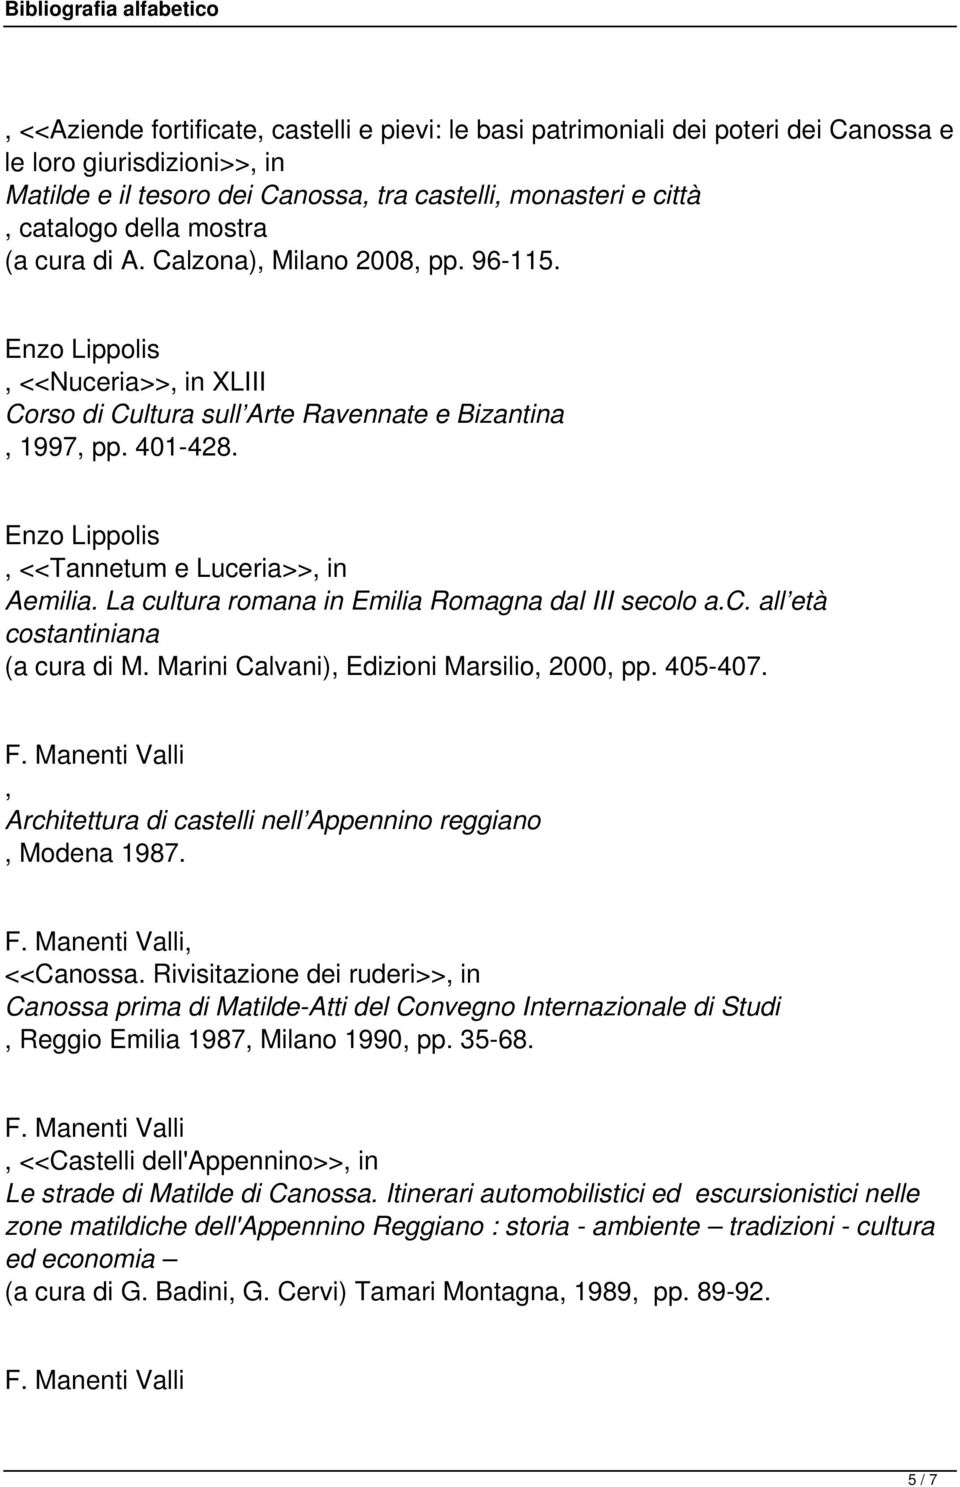 La cultura romana in Emilia Romagna dal III secolo a.c. all età costantiniana (a cura di M. Marini Calvani) Edizioni Marsilio 2000 pp. 405-407.